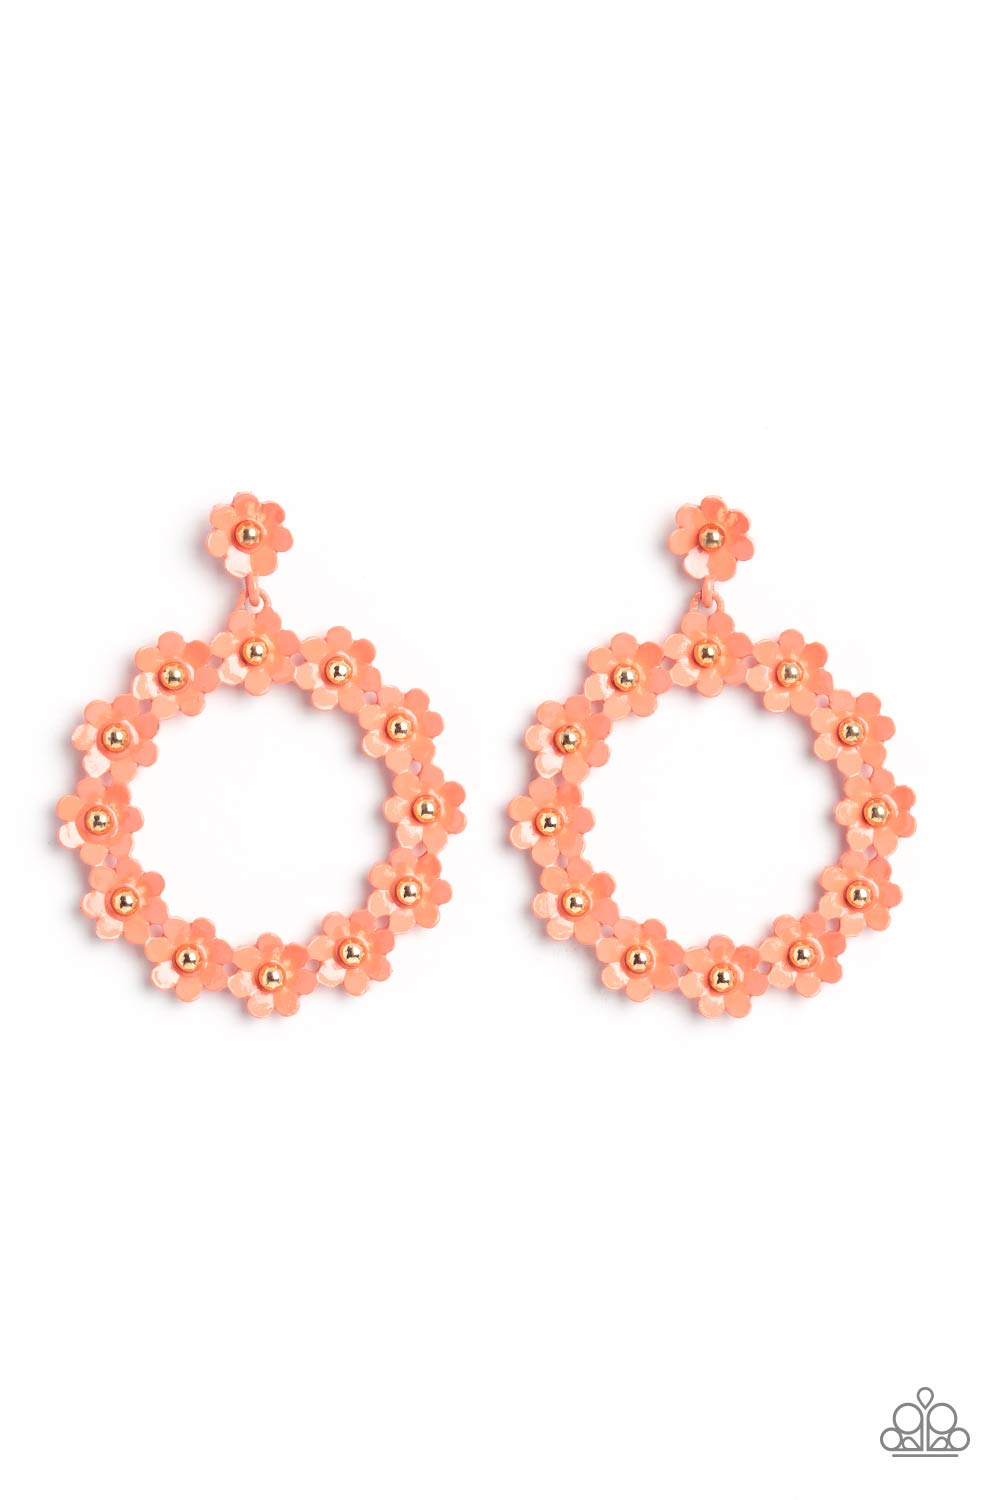 Paparazzi Earrings - Daisy Meadows - Orange Earrings Paparazzi jewelry image